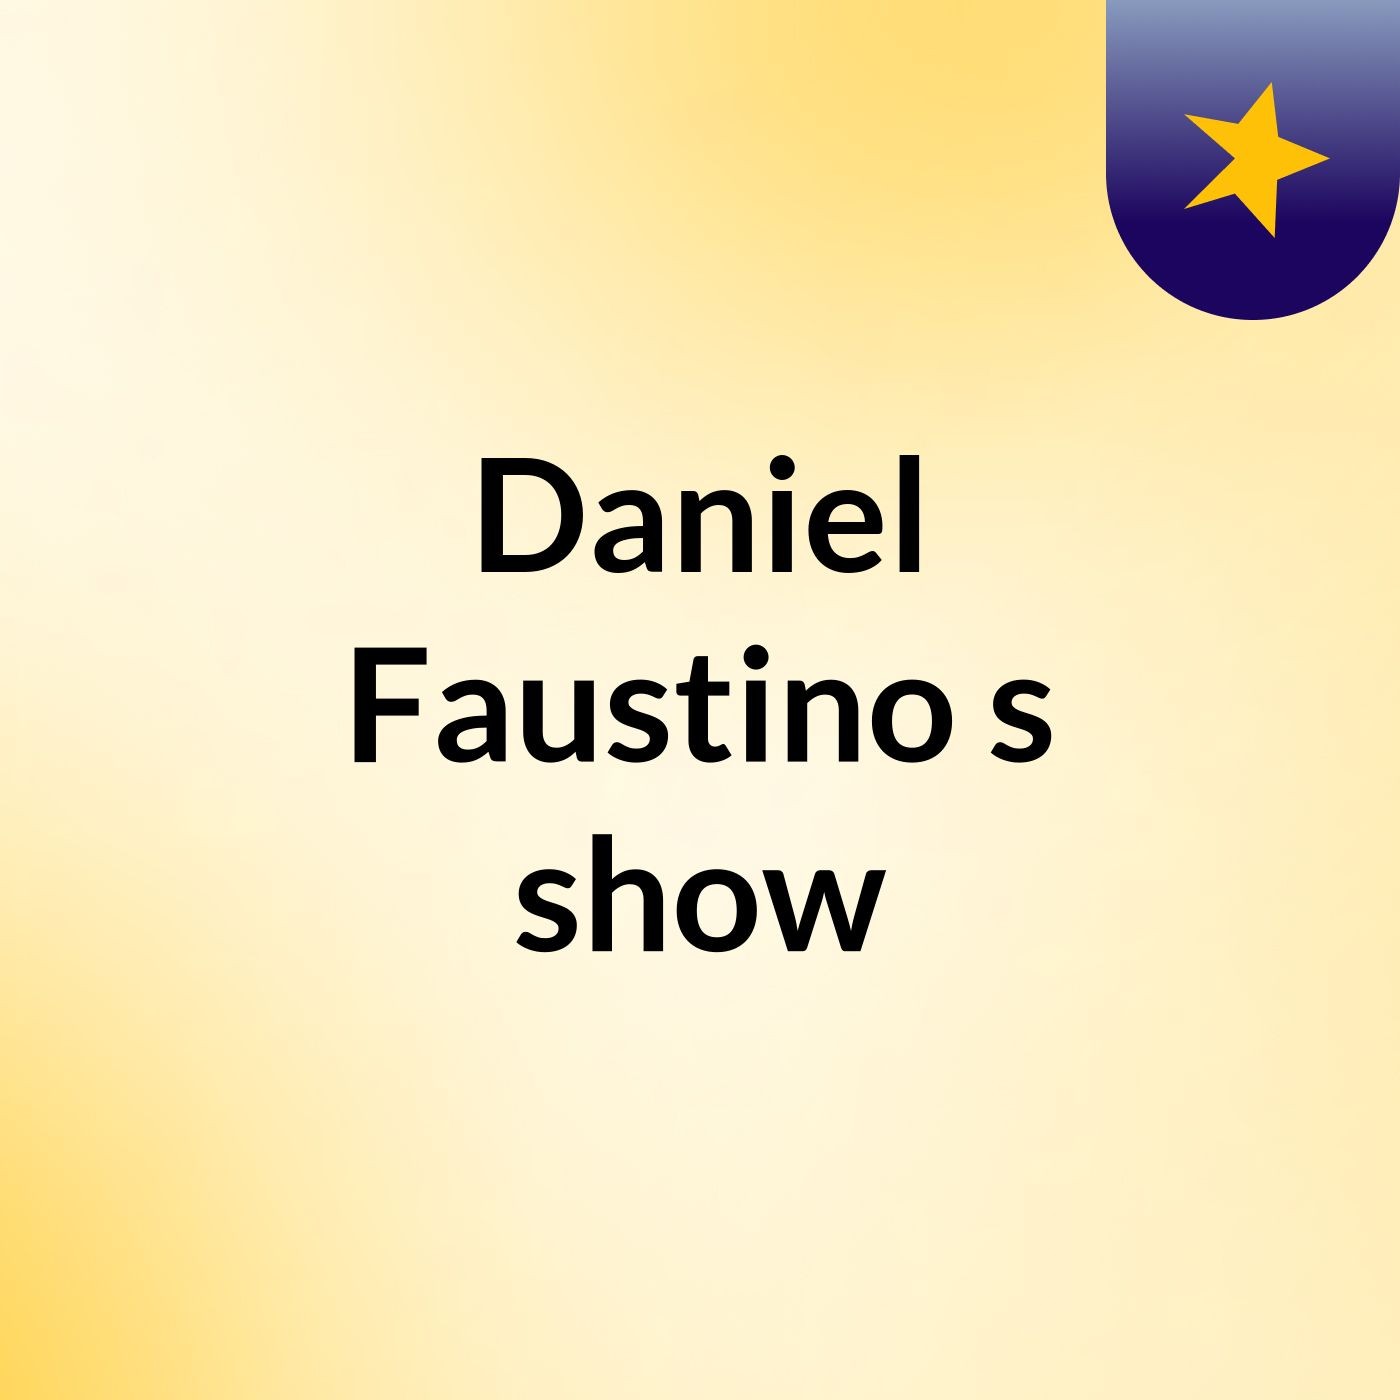 Daniel Faustino's show